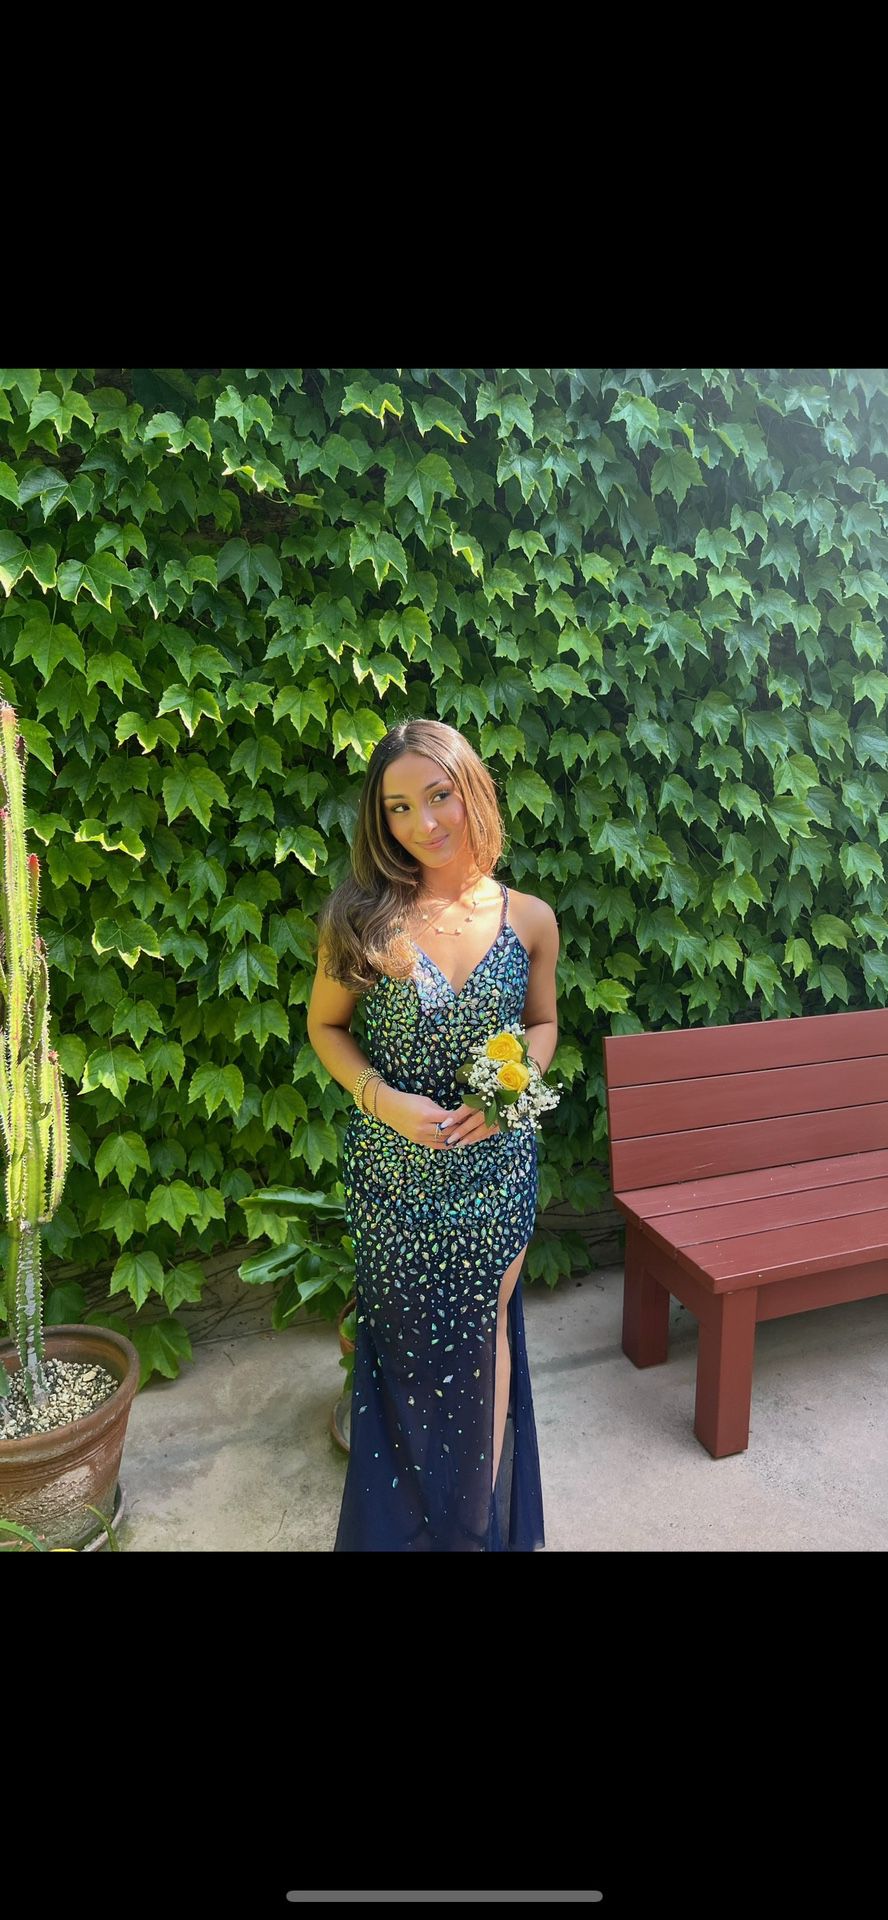 Stunning Prom Dress - Make an Offer